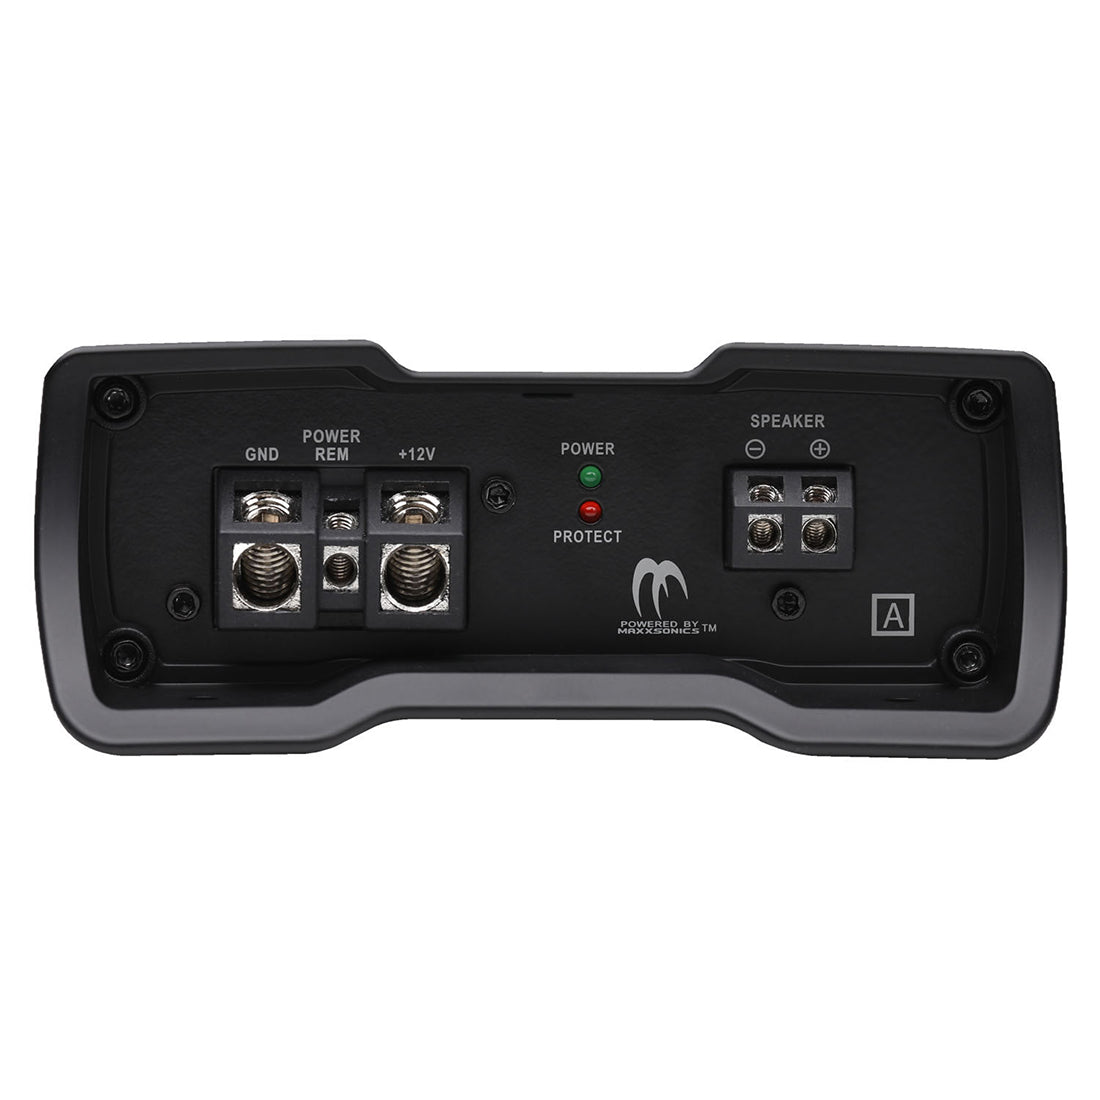 Autotek MM-3025.1D 3000W Max 1-CH Monoblock Class-D Car Audio Compact Amplifier